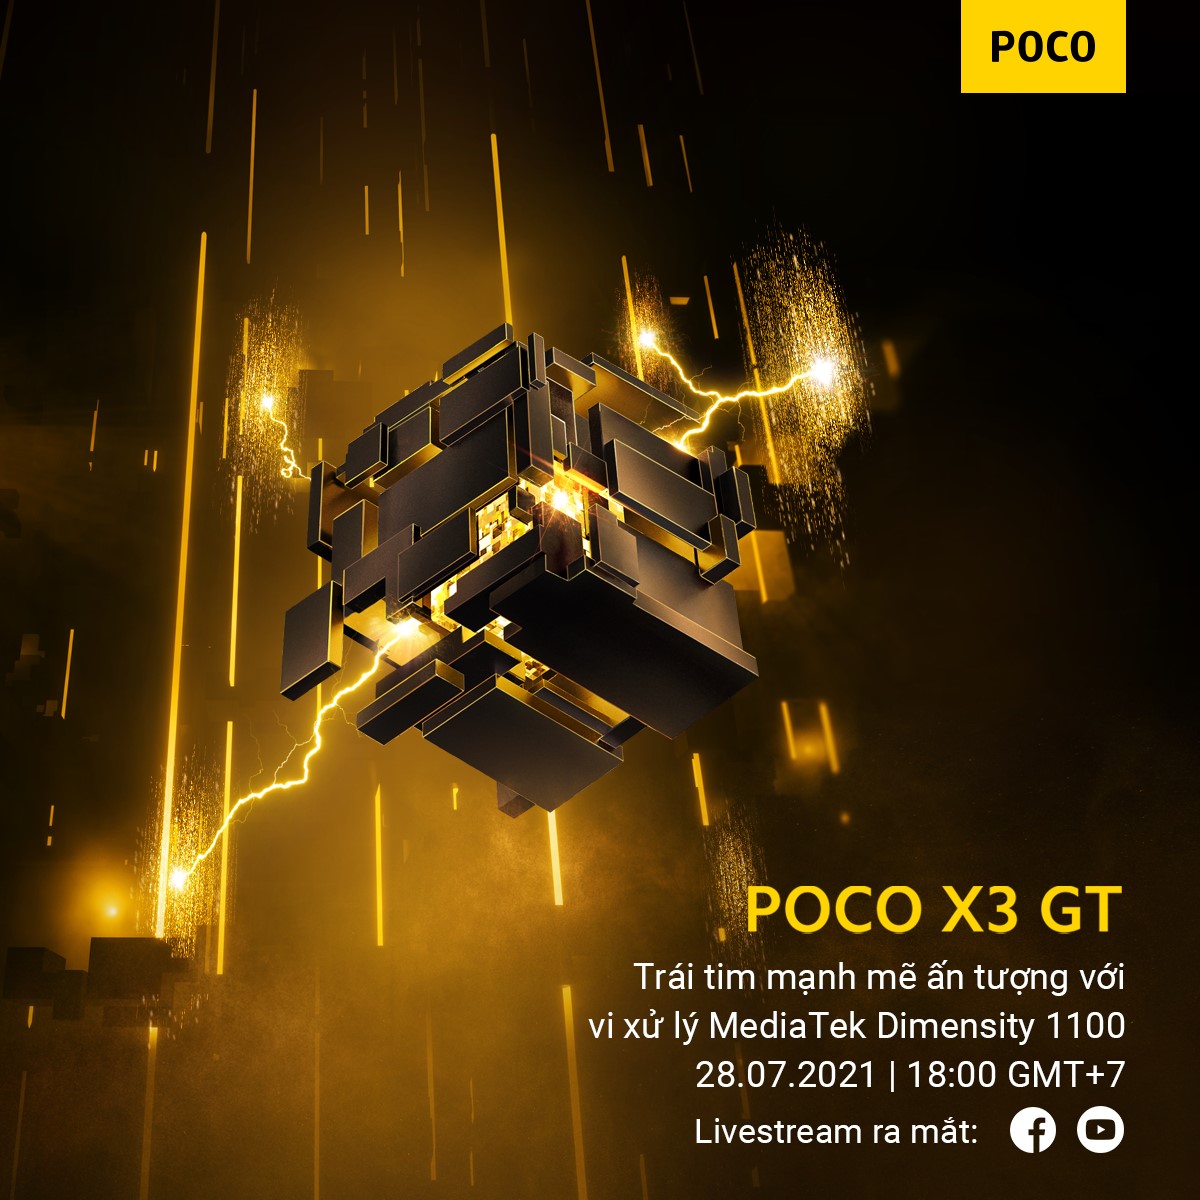 Sự kiện ra mắt POCO X3 GT tại Việt Nam được tổ chức trực tuyến vào tối nay